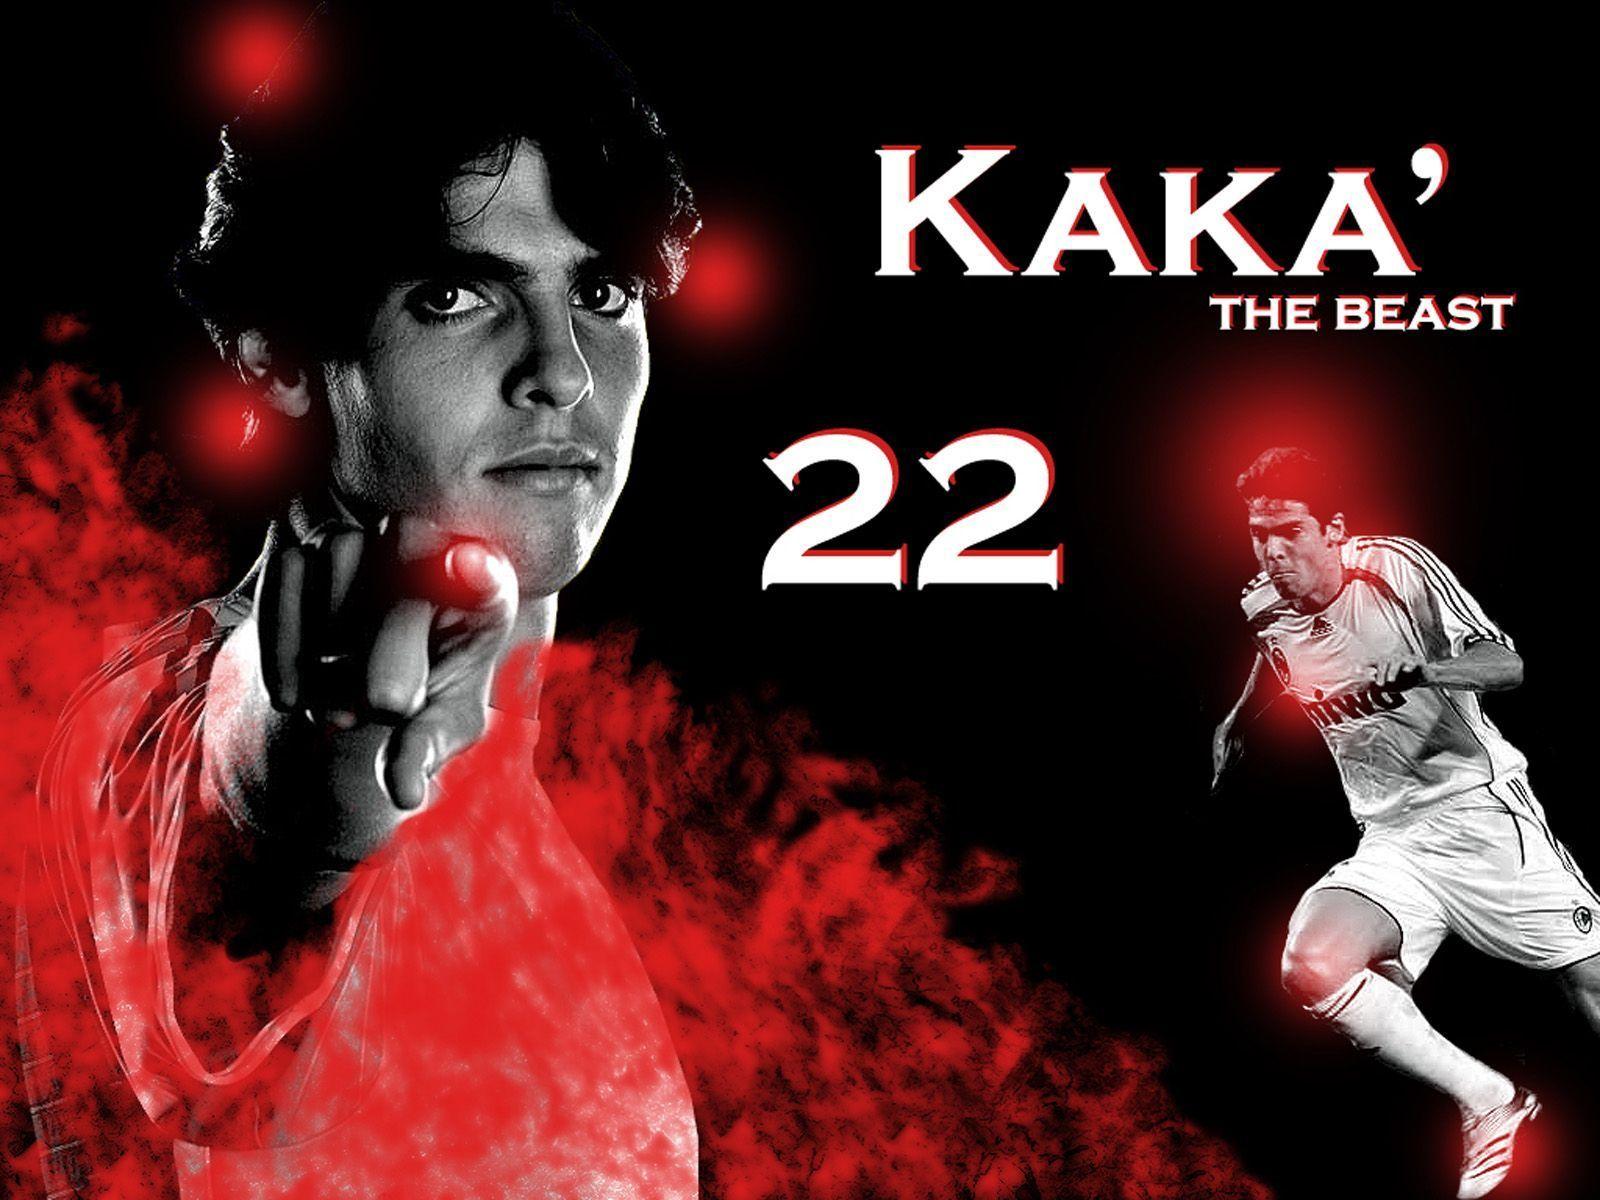 Kaka Ac Milan Wallpaper Download 160026 Image. soccerwallpics